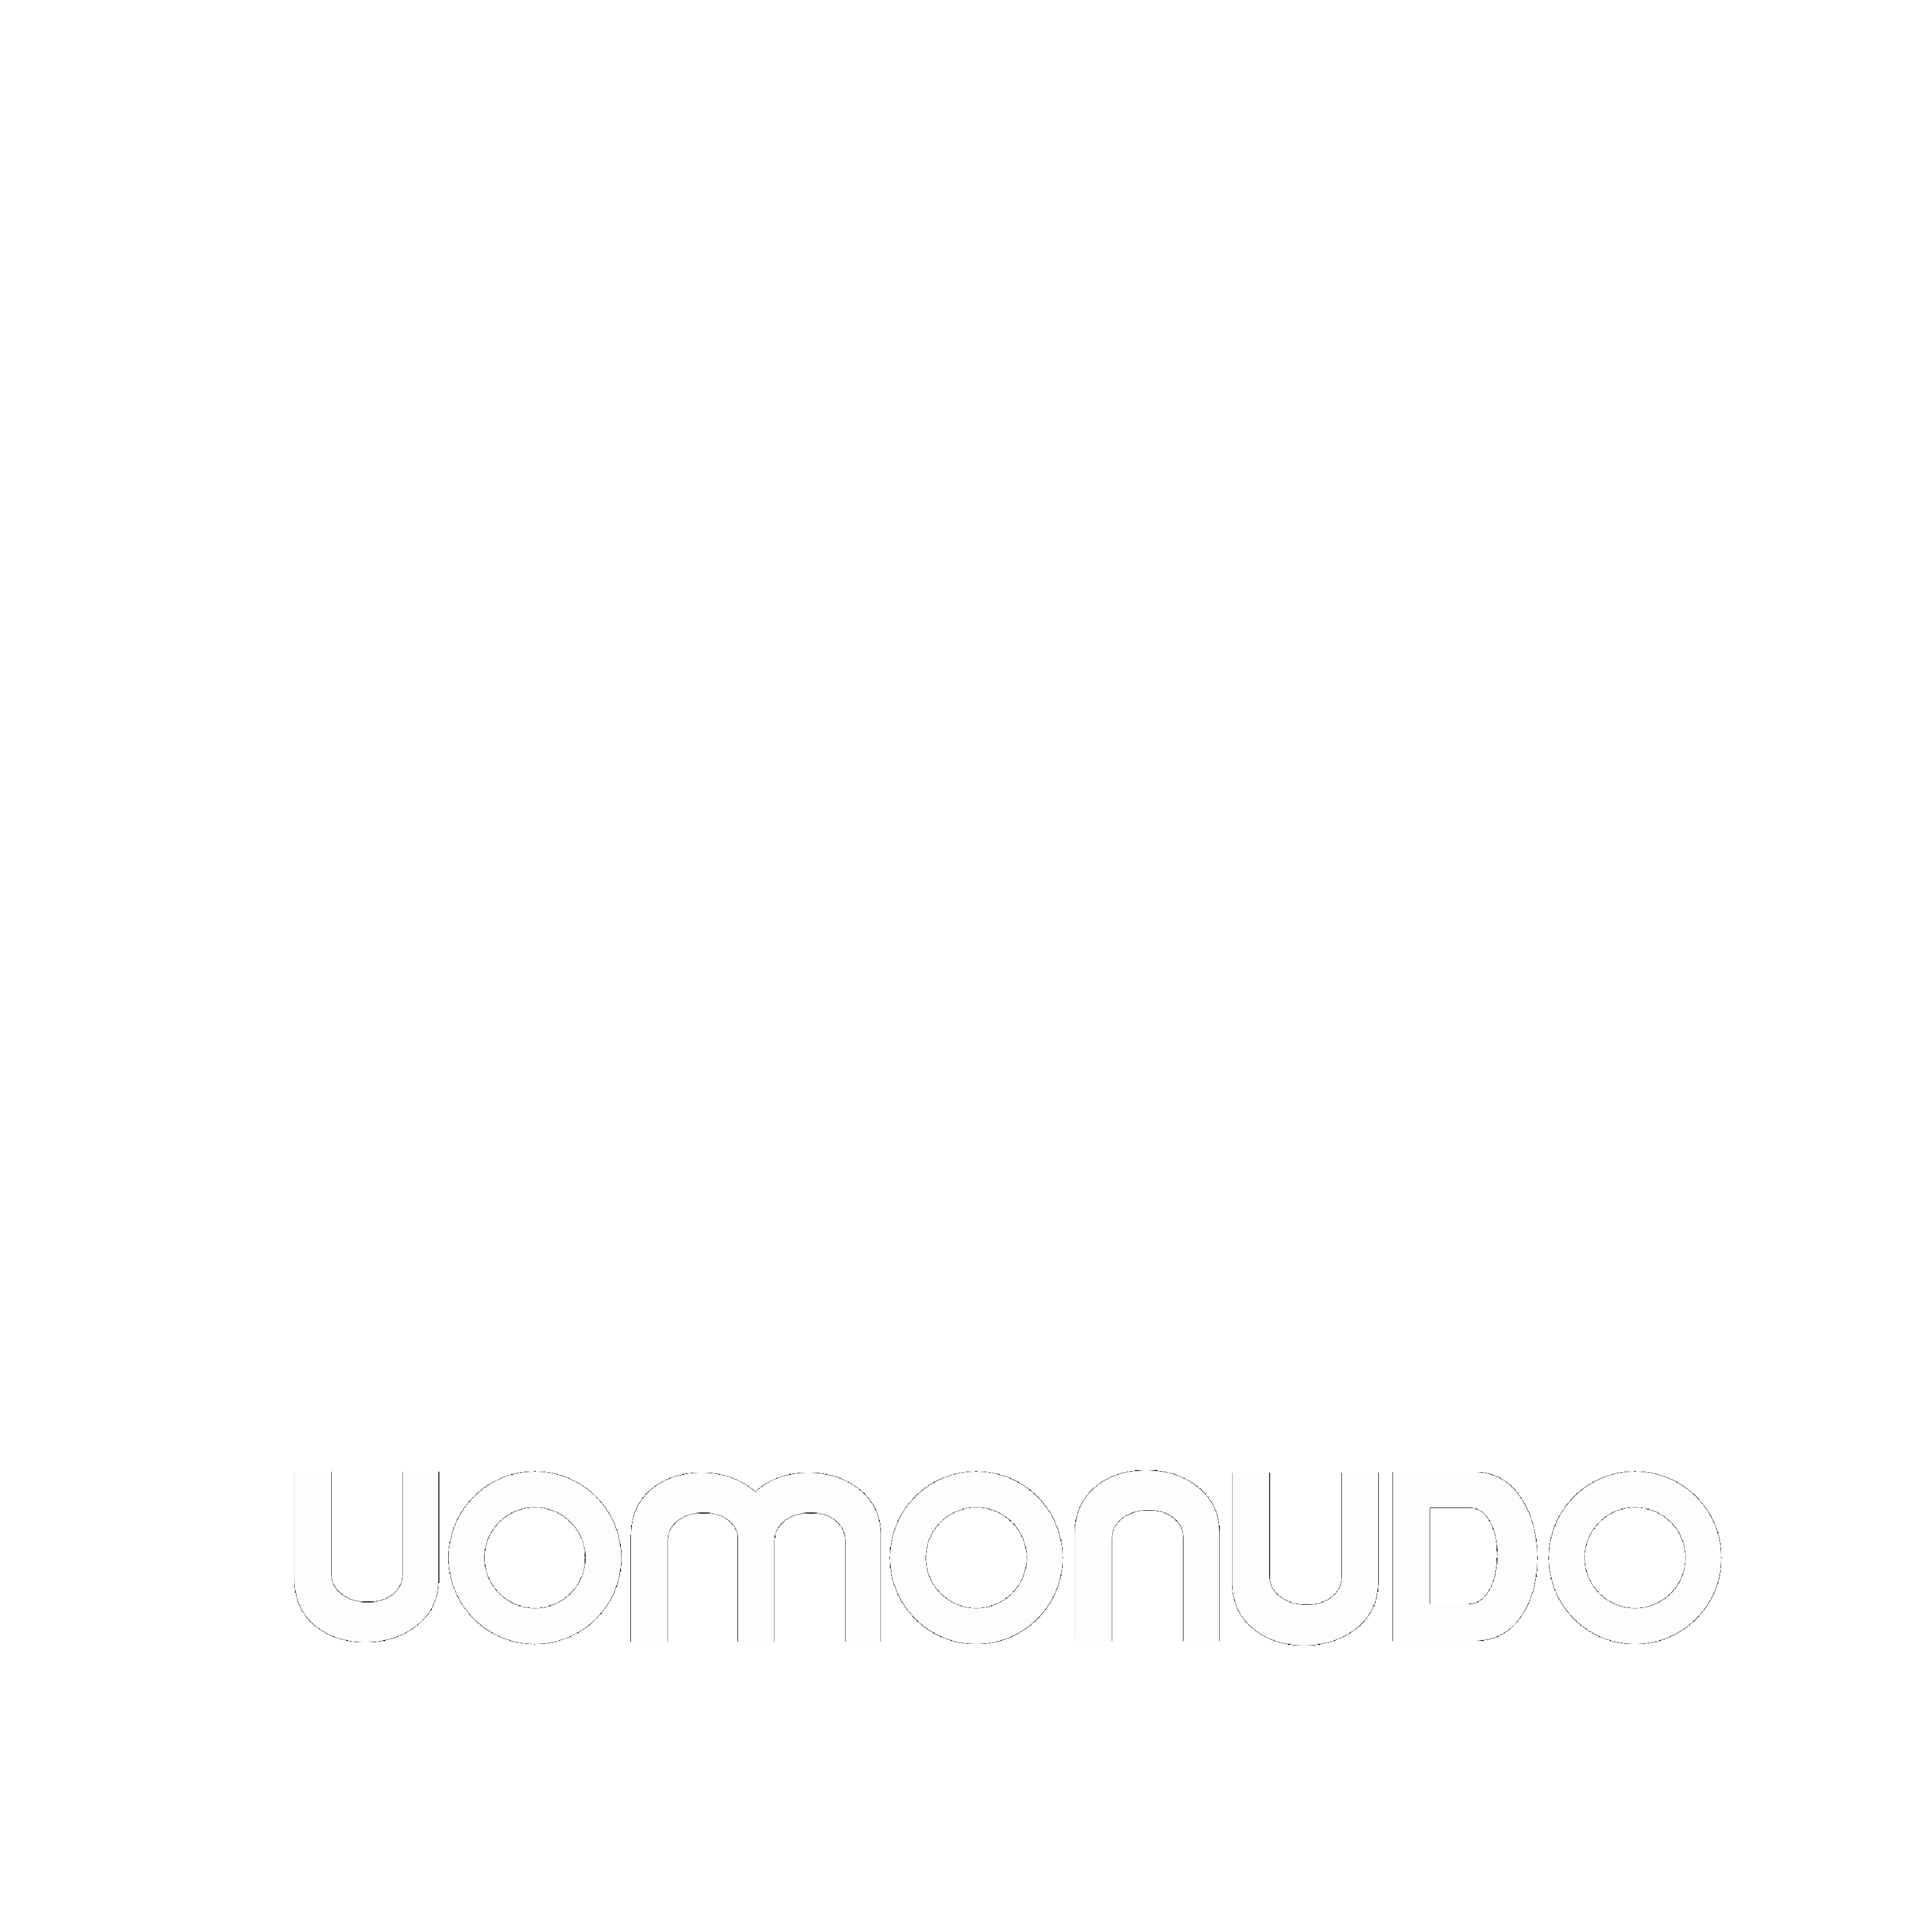 uomonudo.net